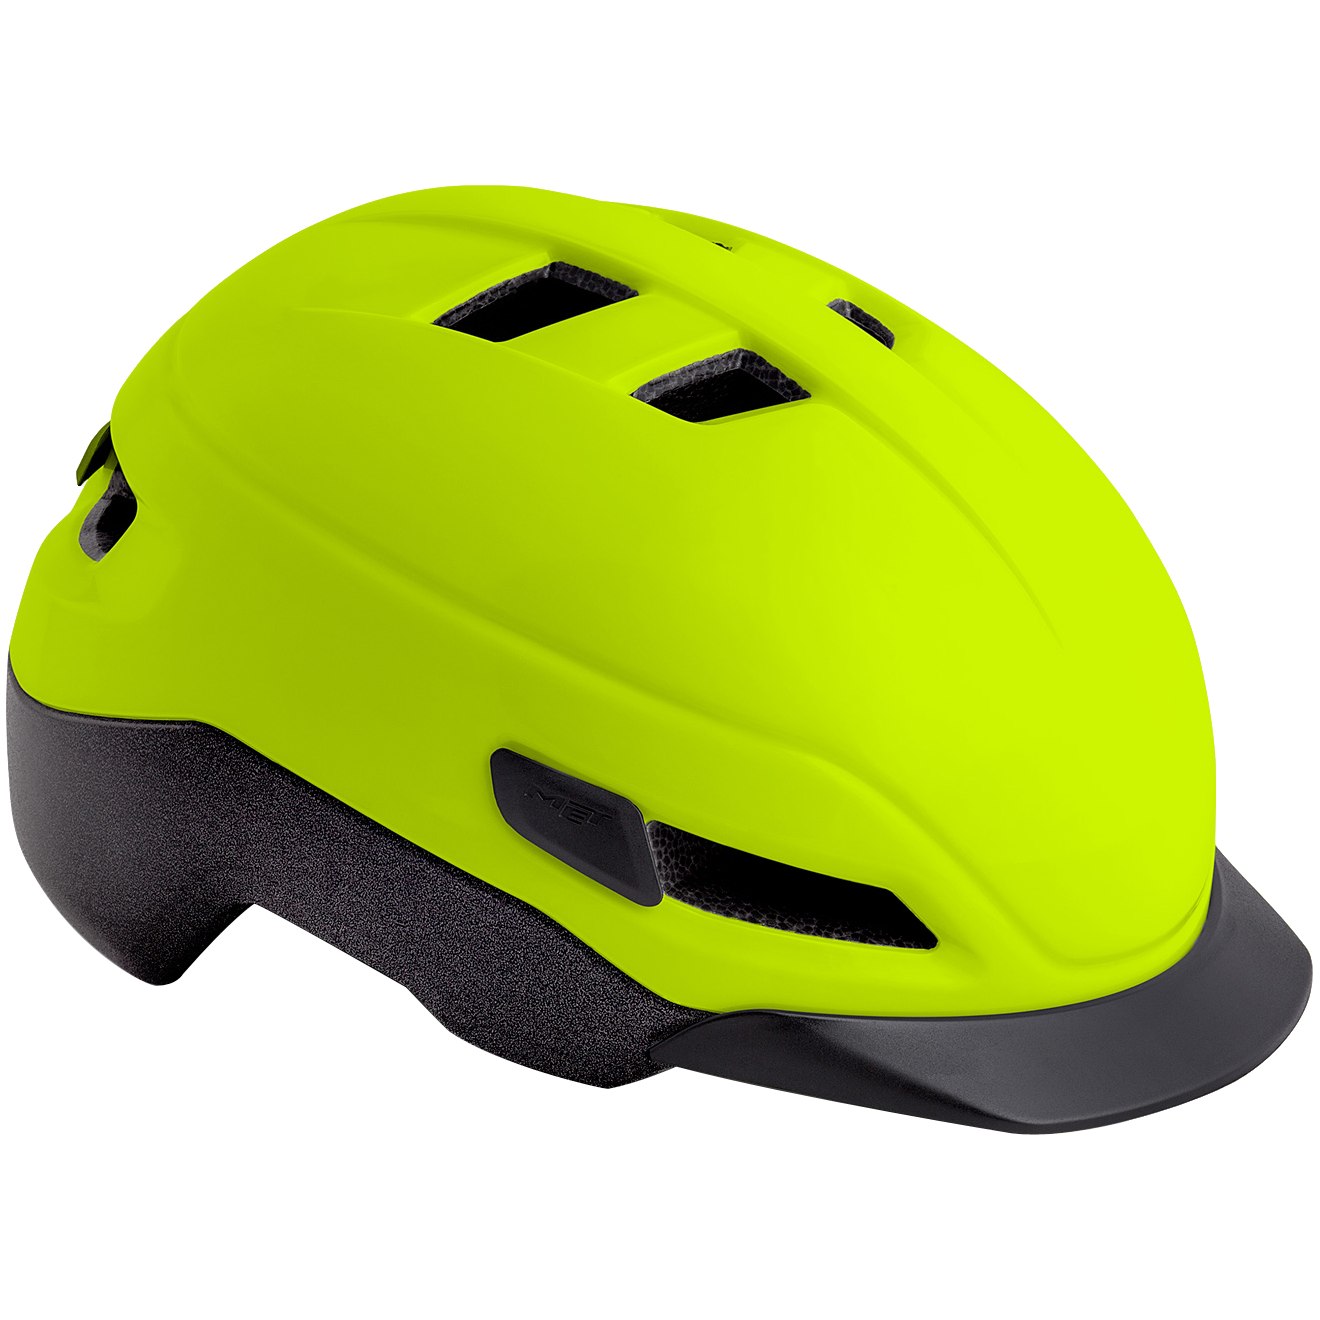 Bild von MET Grancorso Helm - Safety Yellow